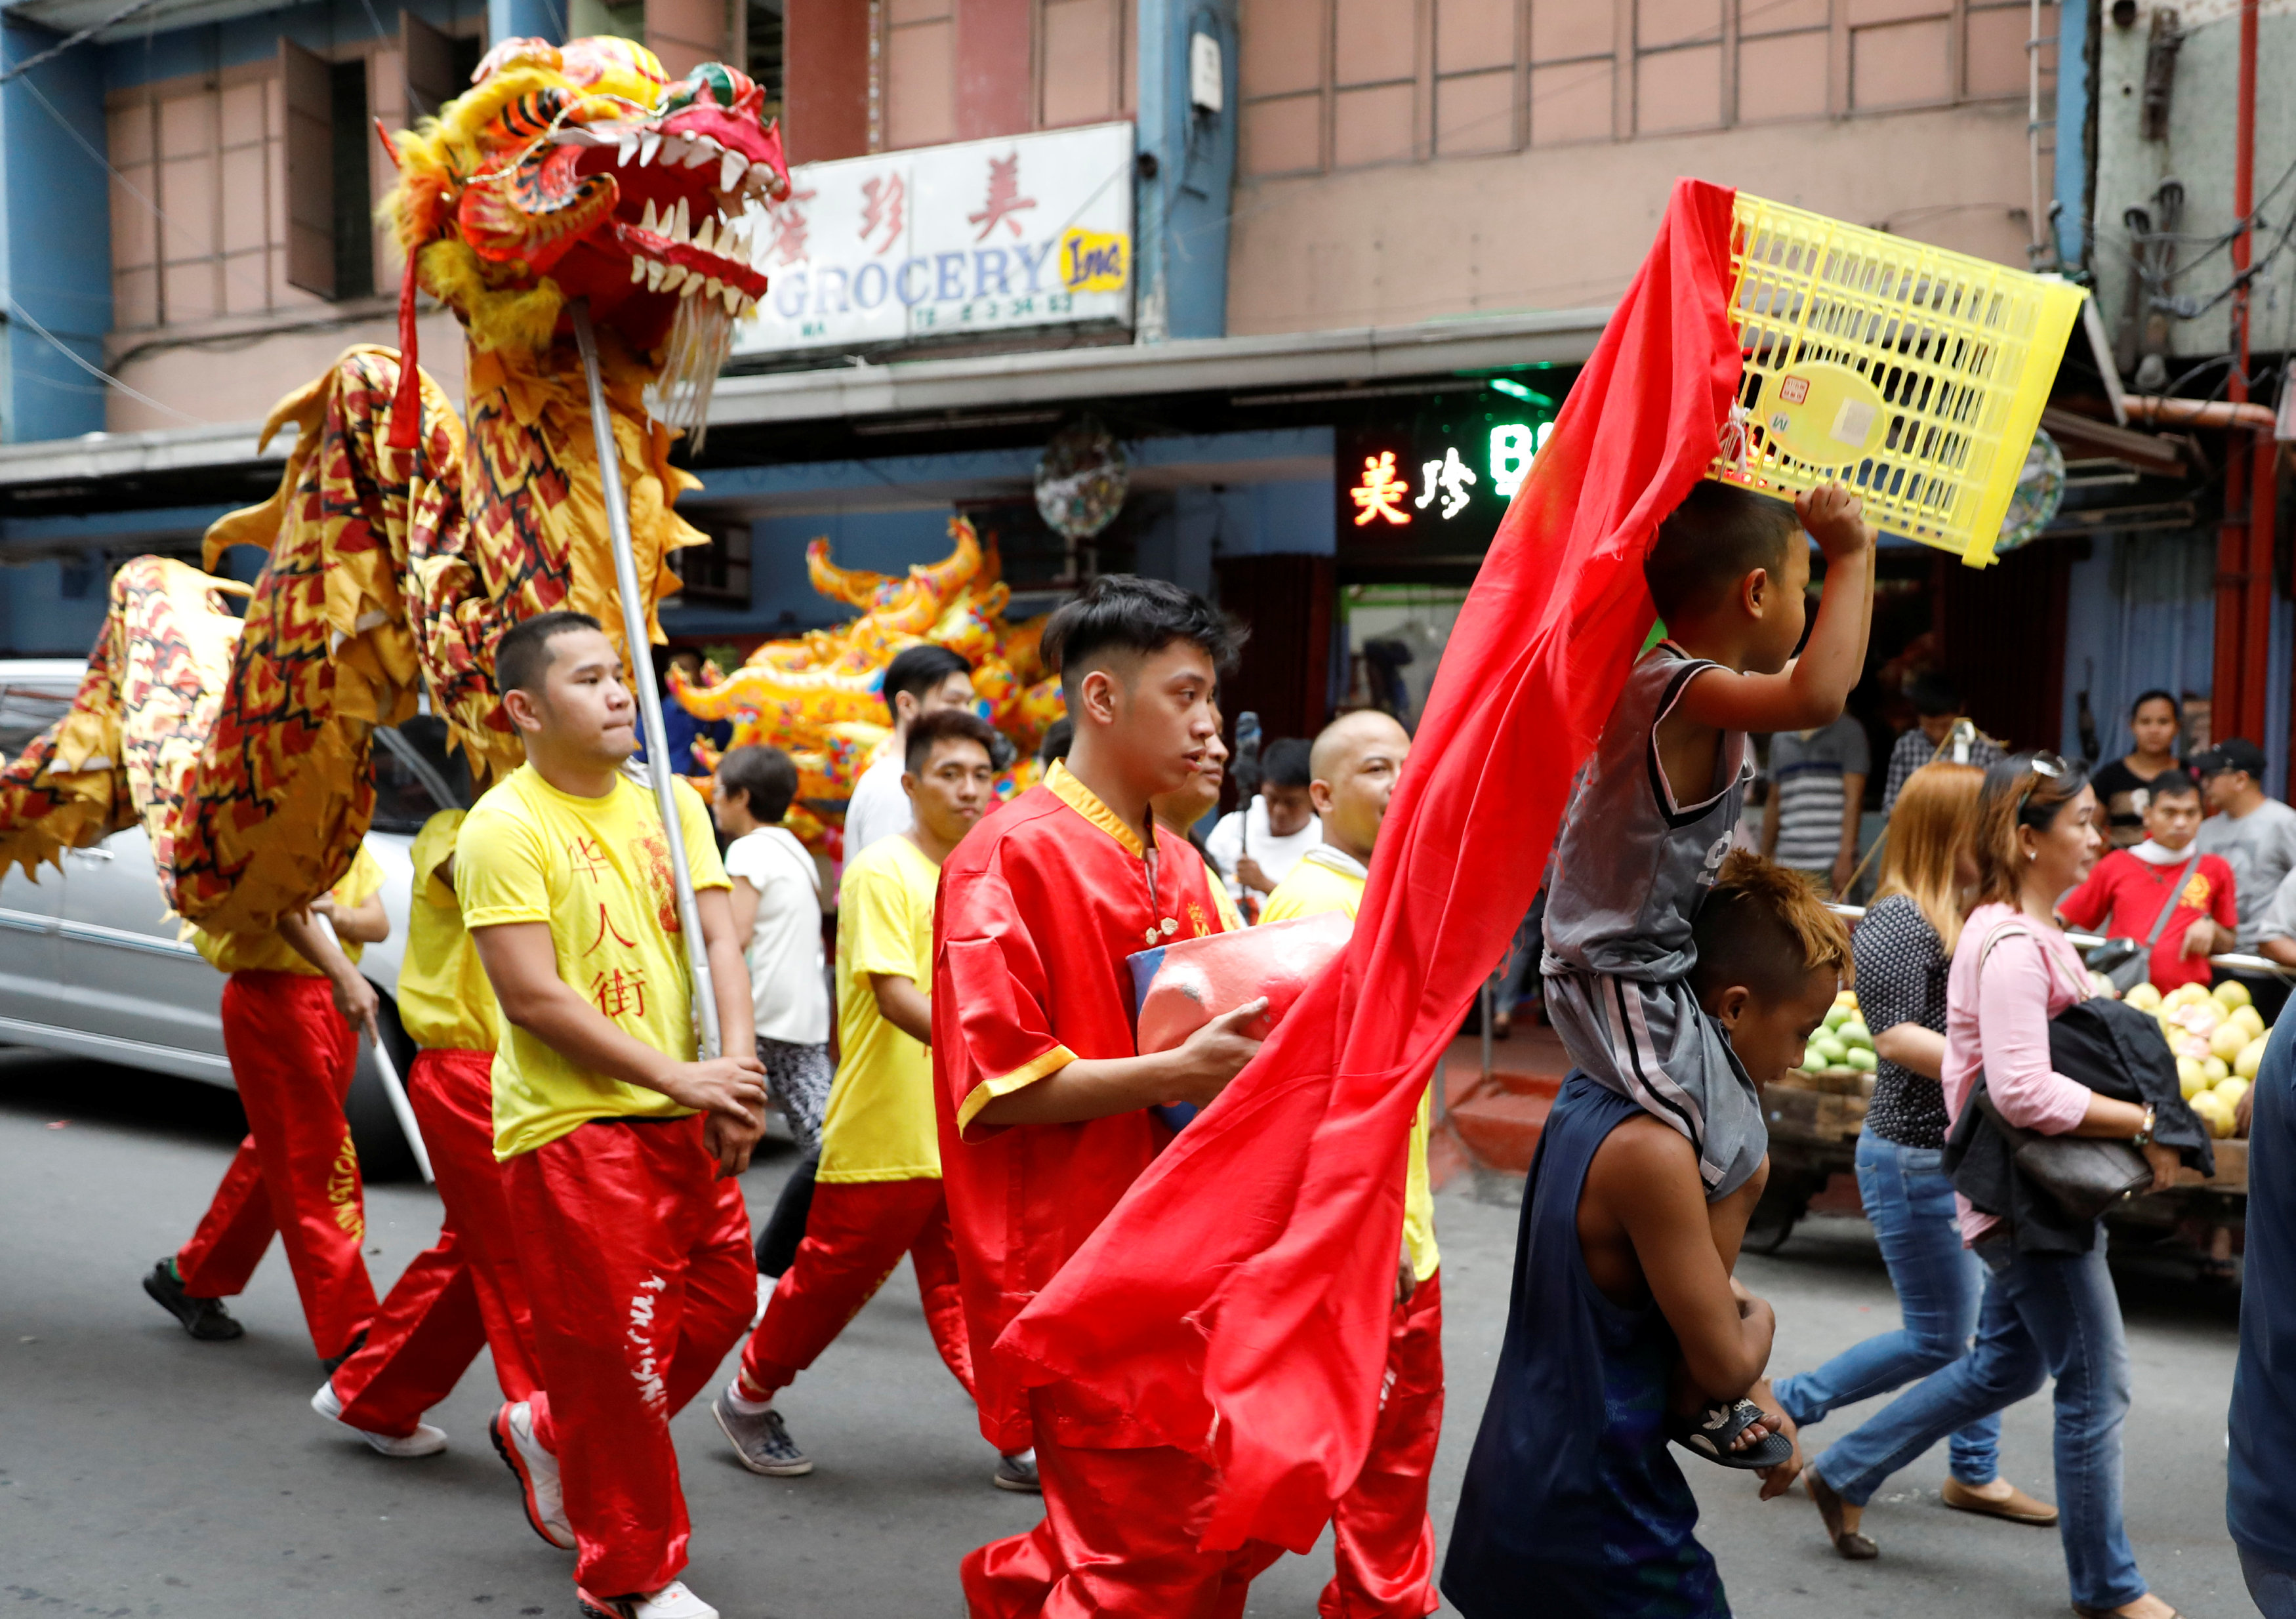 شباب يقدمون رقصات التنين فى شوارع الفلبين بمناسبة السنة الصينية الجديدة